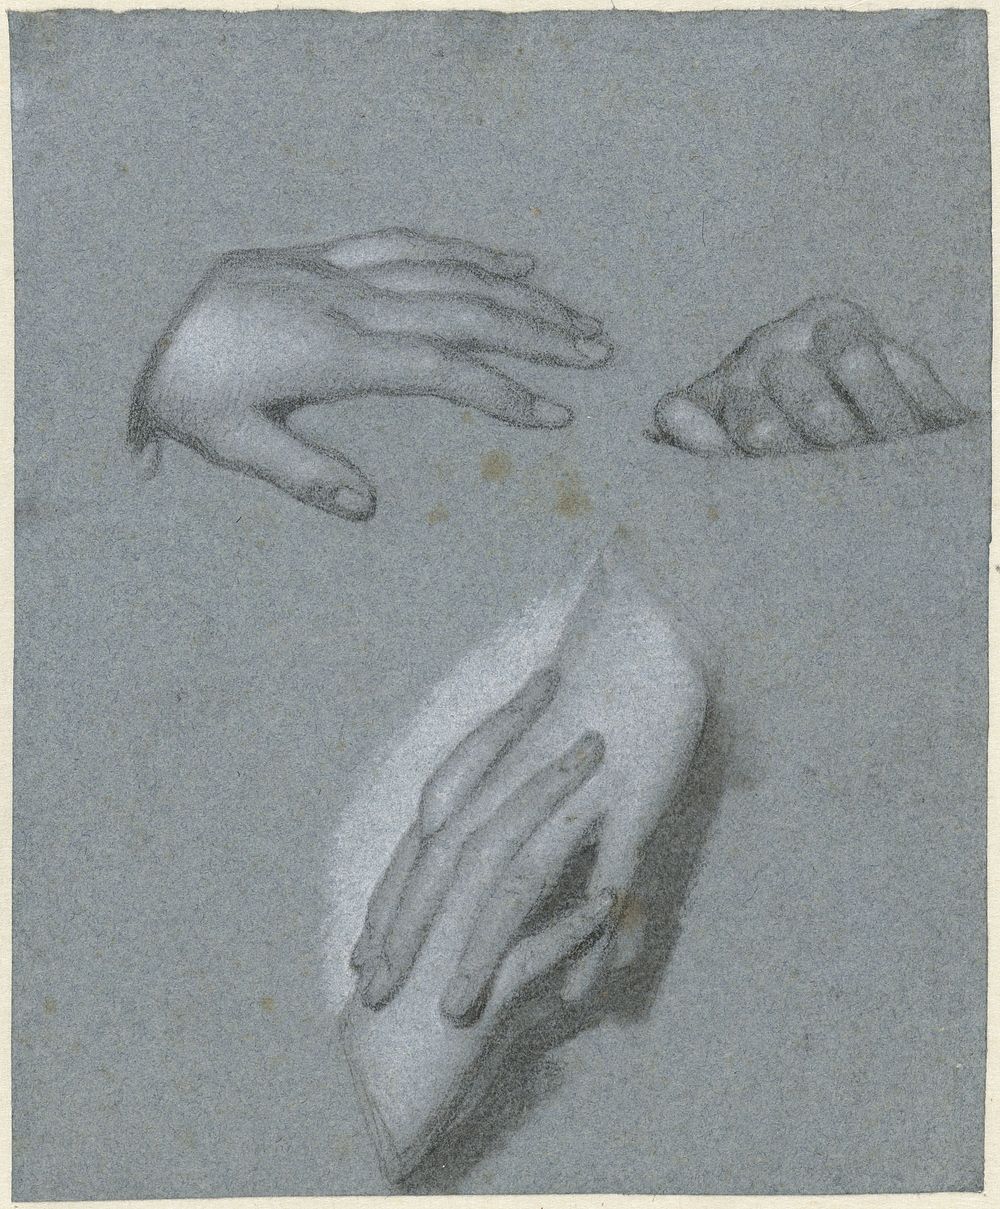 Studies van handen (1774 - 1837) by Charles Howard Hodges